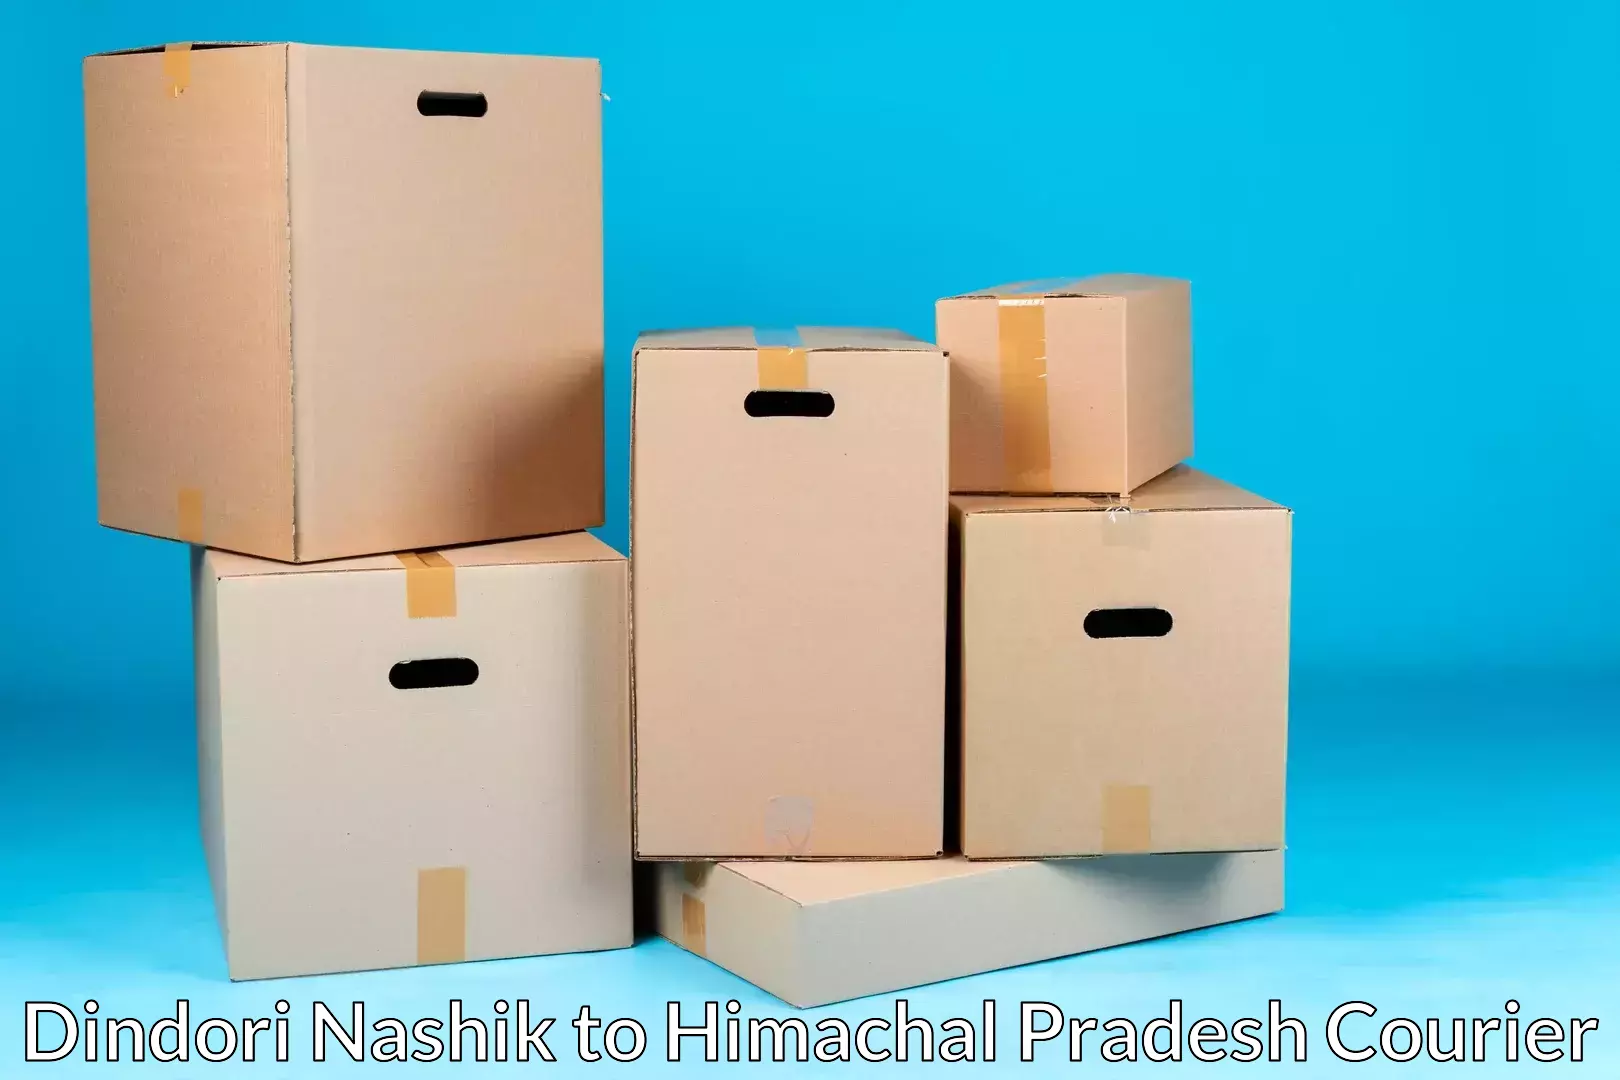 Professional packing services Dindori Nashik to Jukhala